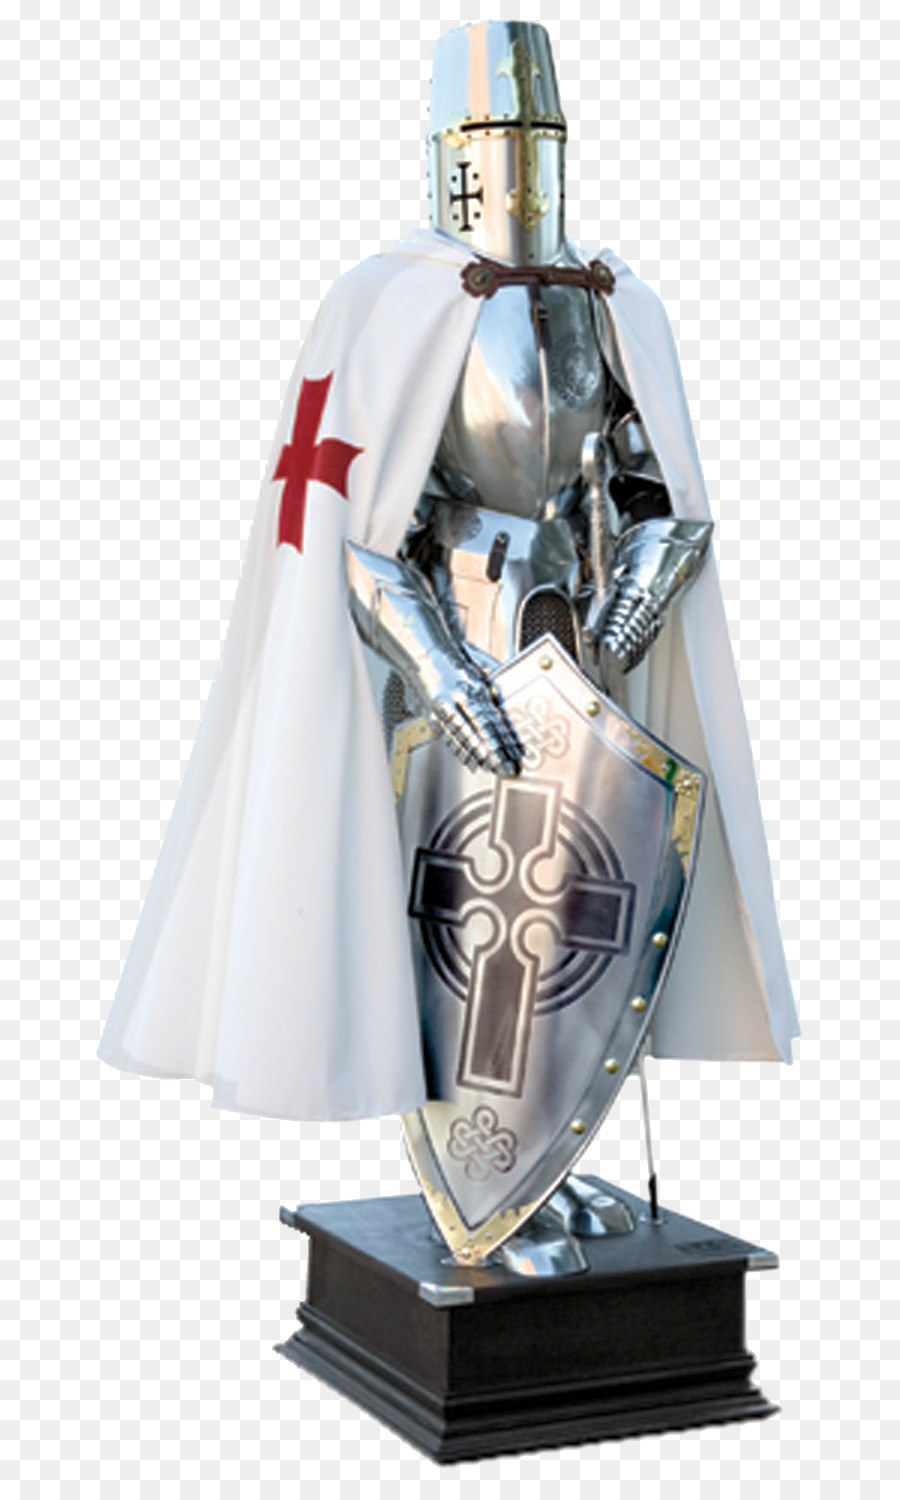 Hiệp sĩ thập tự Chinh Tấm giáp thành Phần của thời trung cổ áo giáp - hiệp sĩ